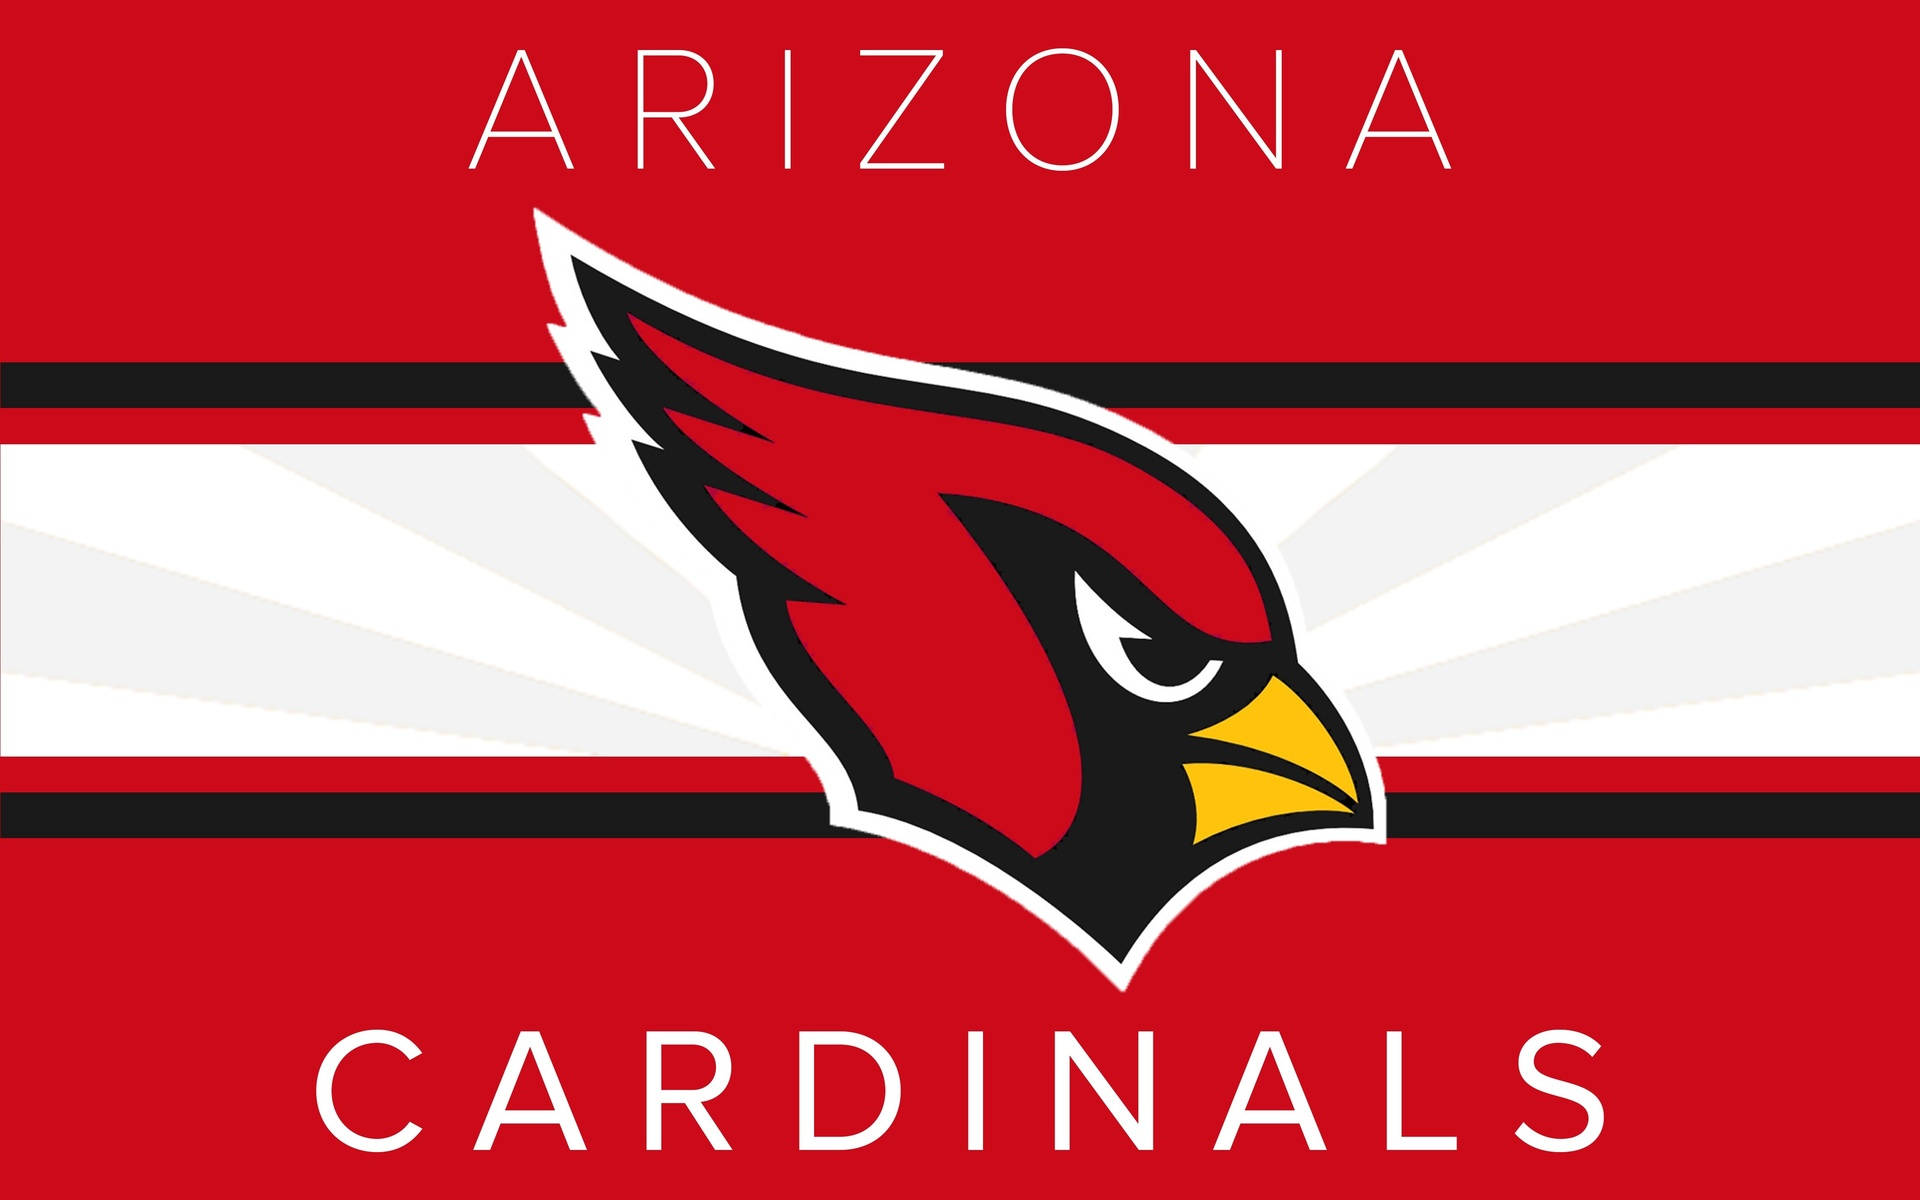 Arizona Cardinals Background Photos